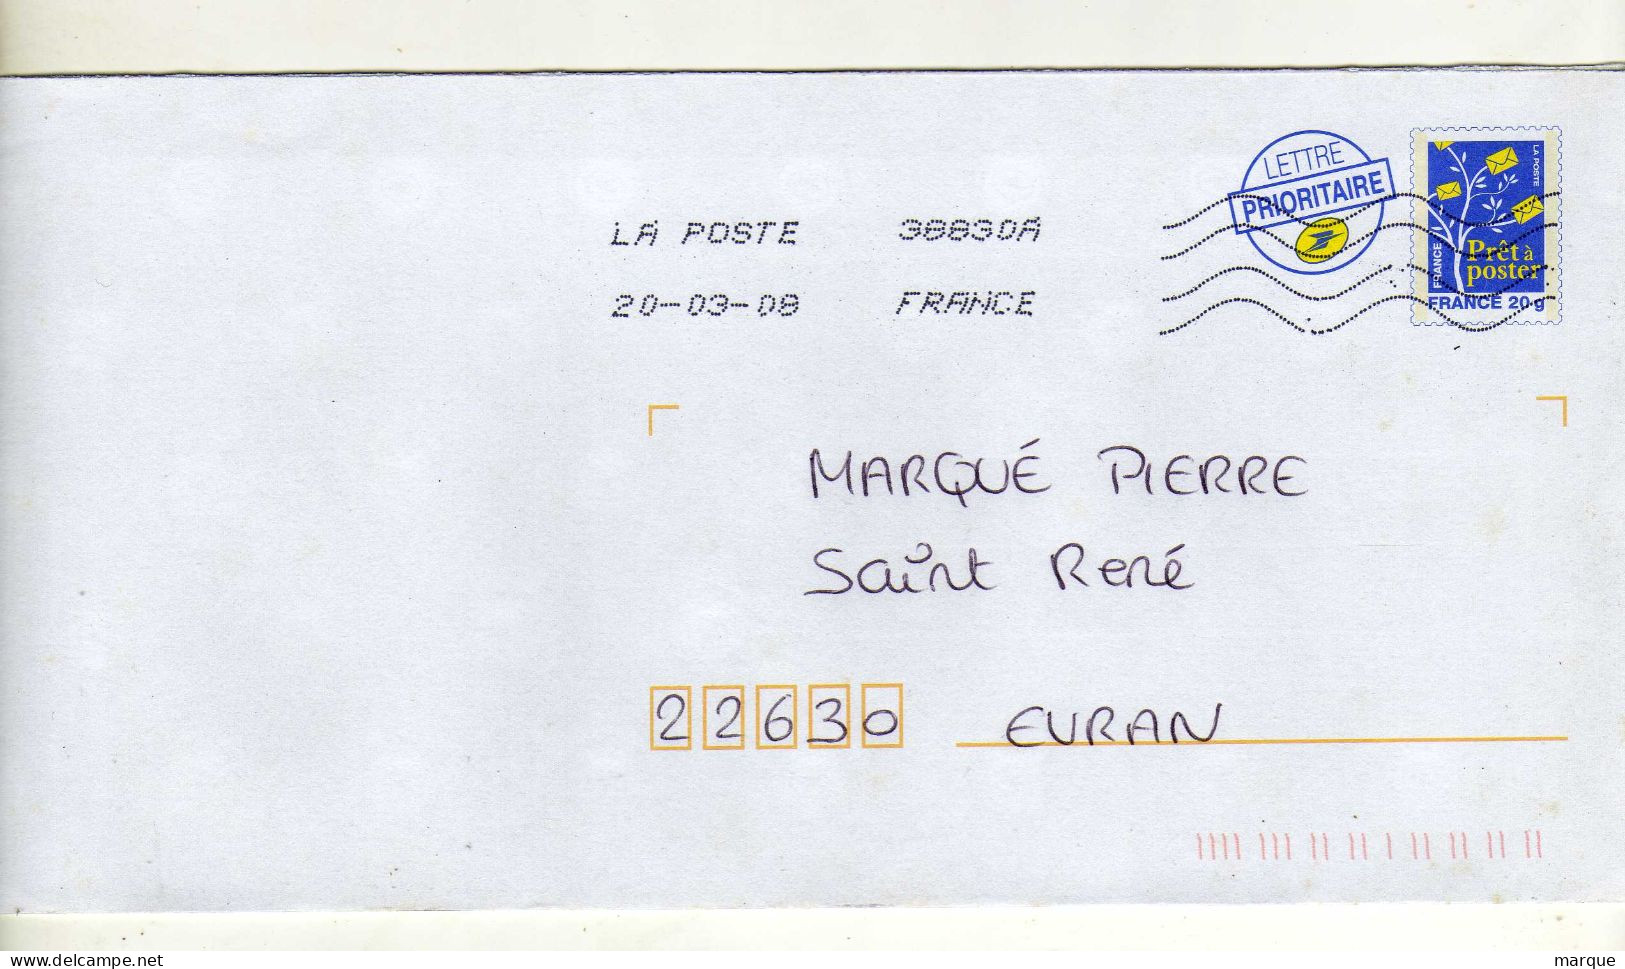 Enveloppe FRANCE Prêt à Poster Lettre Prioritaire 20g Oblitération LA POSTE 38830A 20/03/2008 - Prêts-à-poster:Overprinting/Blue Logo